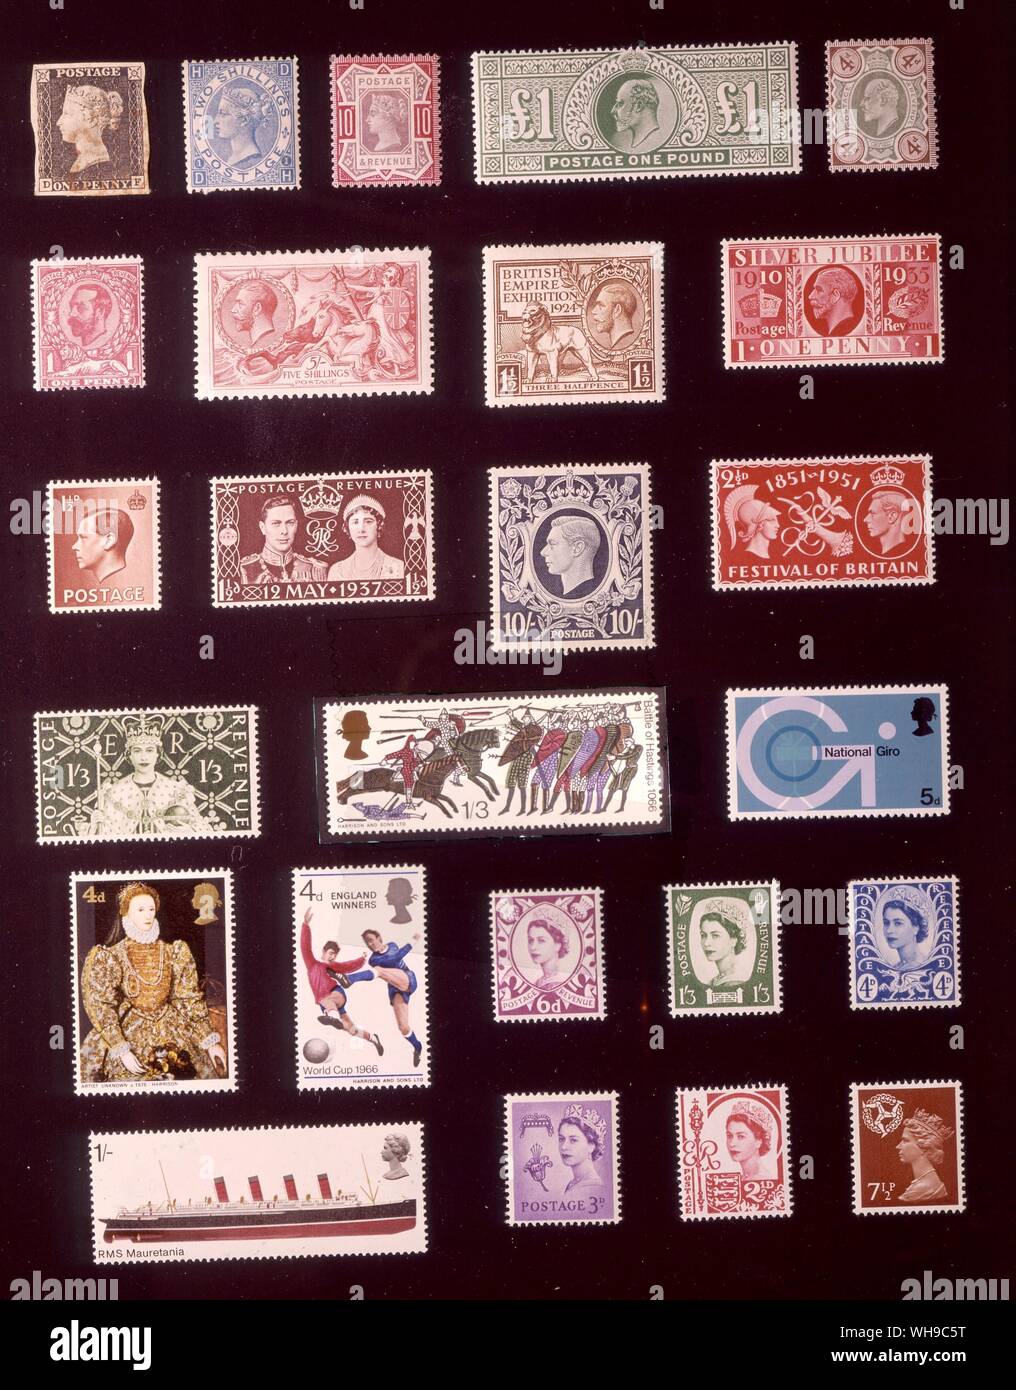 EUROPE - GRANDE BRETAGNE : (de gauche à droite) 1. 1 penny, 1840, 2. 2 shillings, 1867, 3. 10 pence, 1890, 4. Livre 1, 1902, 5. 4 pence, 1902, 6. 1 penny, 1911, 7. 5 shillings, 1913, 8. 1,5 pence, 1924, 9. 1 penny, 1935, 10. 1,5 pence, 1936, 11. 1,5 pence, 1937, 12. 10 shillings, 1939, 13. 2,5 pence, 1951, 14. 1 shilling 3 pence, 1953, 15. 1 shilling 3 pence, 19666, 16. 5 pence, 1969, 17. 4 pence, 1968, 18. 4 pence, 1966, 19. 1 shilling, 1969, 20. L'Écosse, 6 pence, 1958, 21. L'Irlande du Nord, 1 shilling 3 pence, 1958, 22. Le Pays de Galles et Monmouthshire, 4 pence, 1966, 23. Guernesey, 3 pence, 1958, 24. Banque D'Images